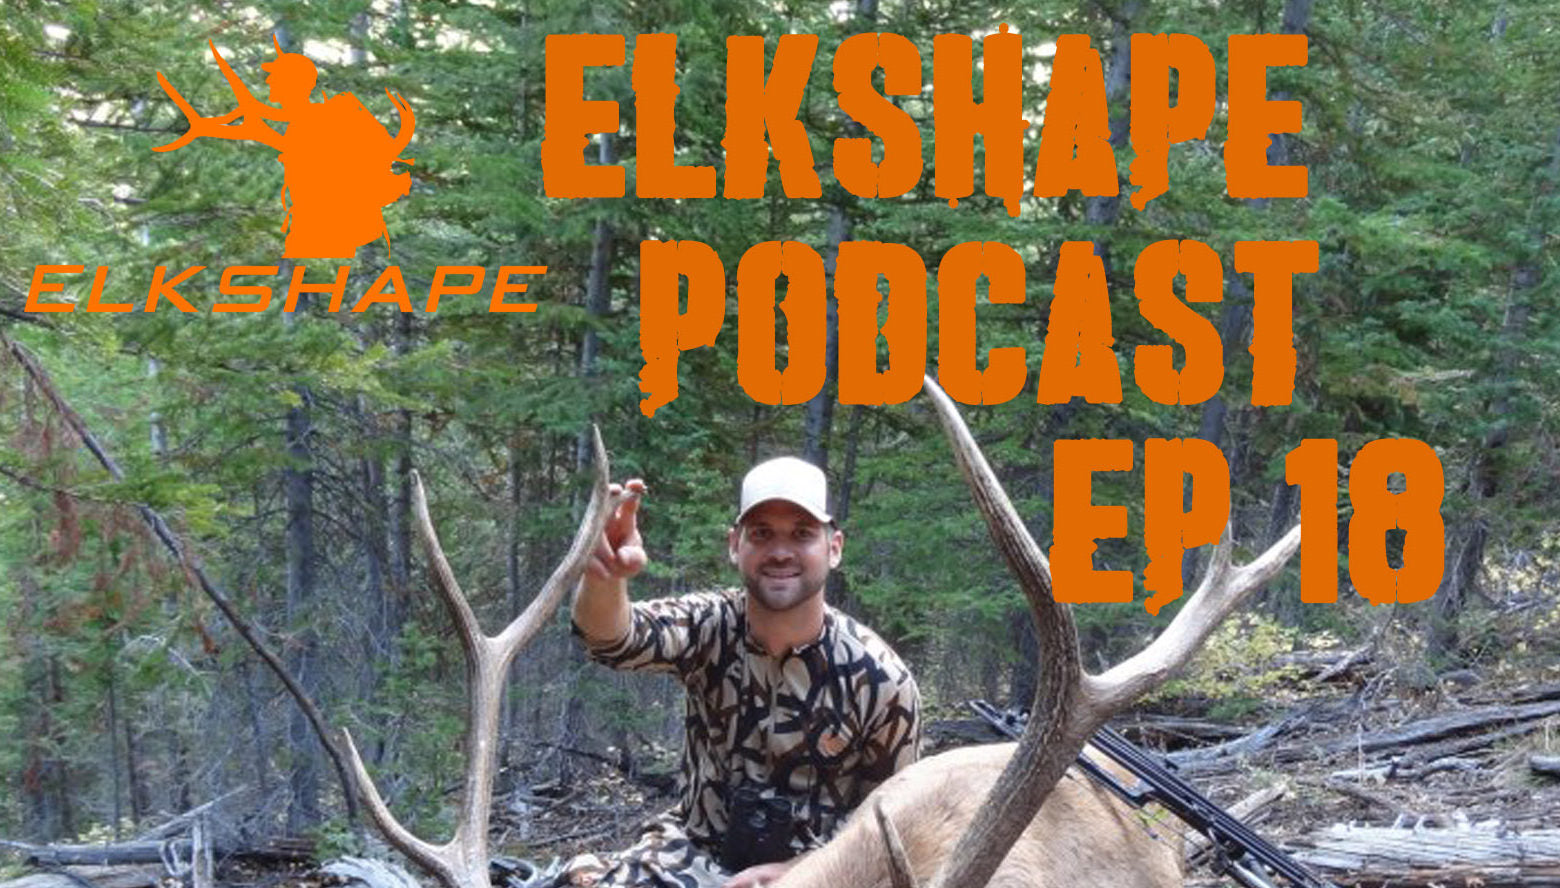 ElkShape Podcast EP 18 Steve Speck